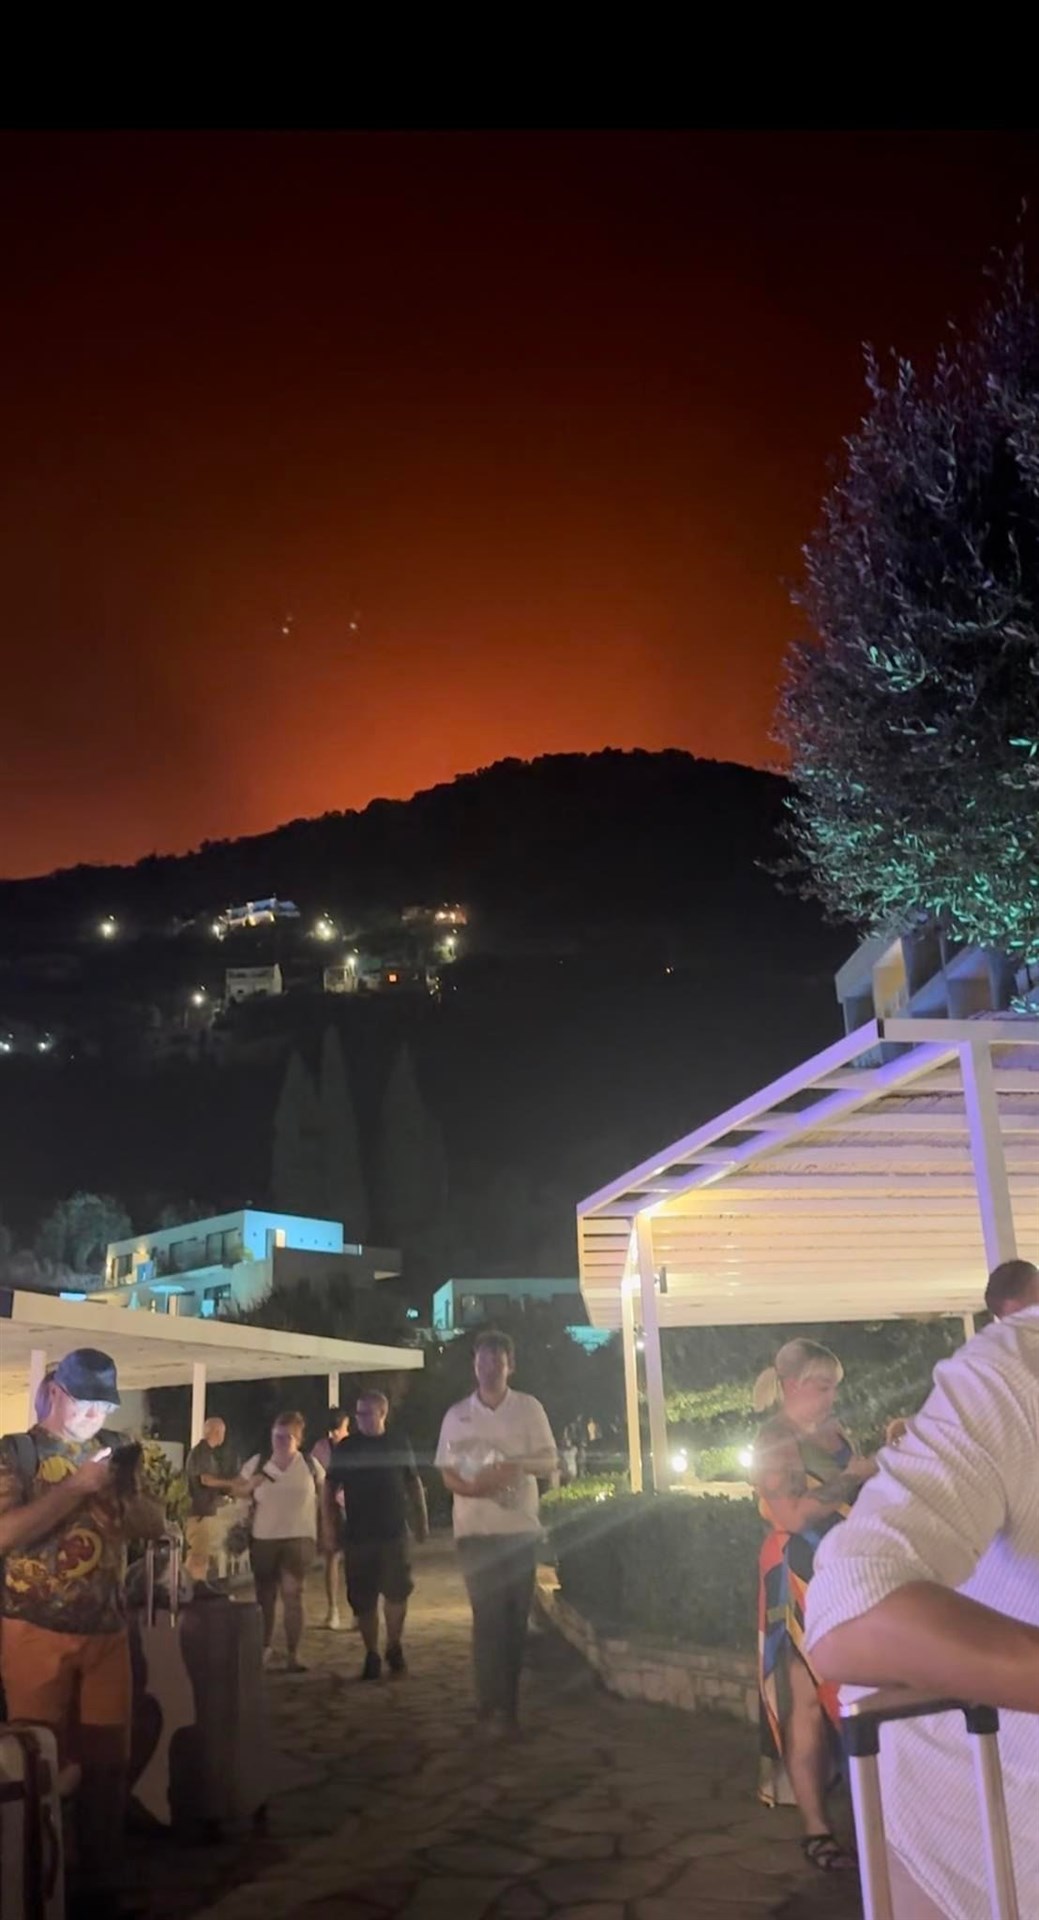 Corfu fire – Instagram post by Adele Buyze.